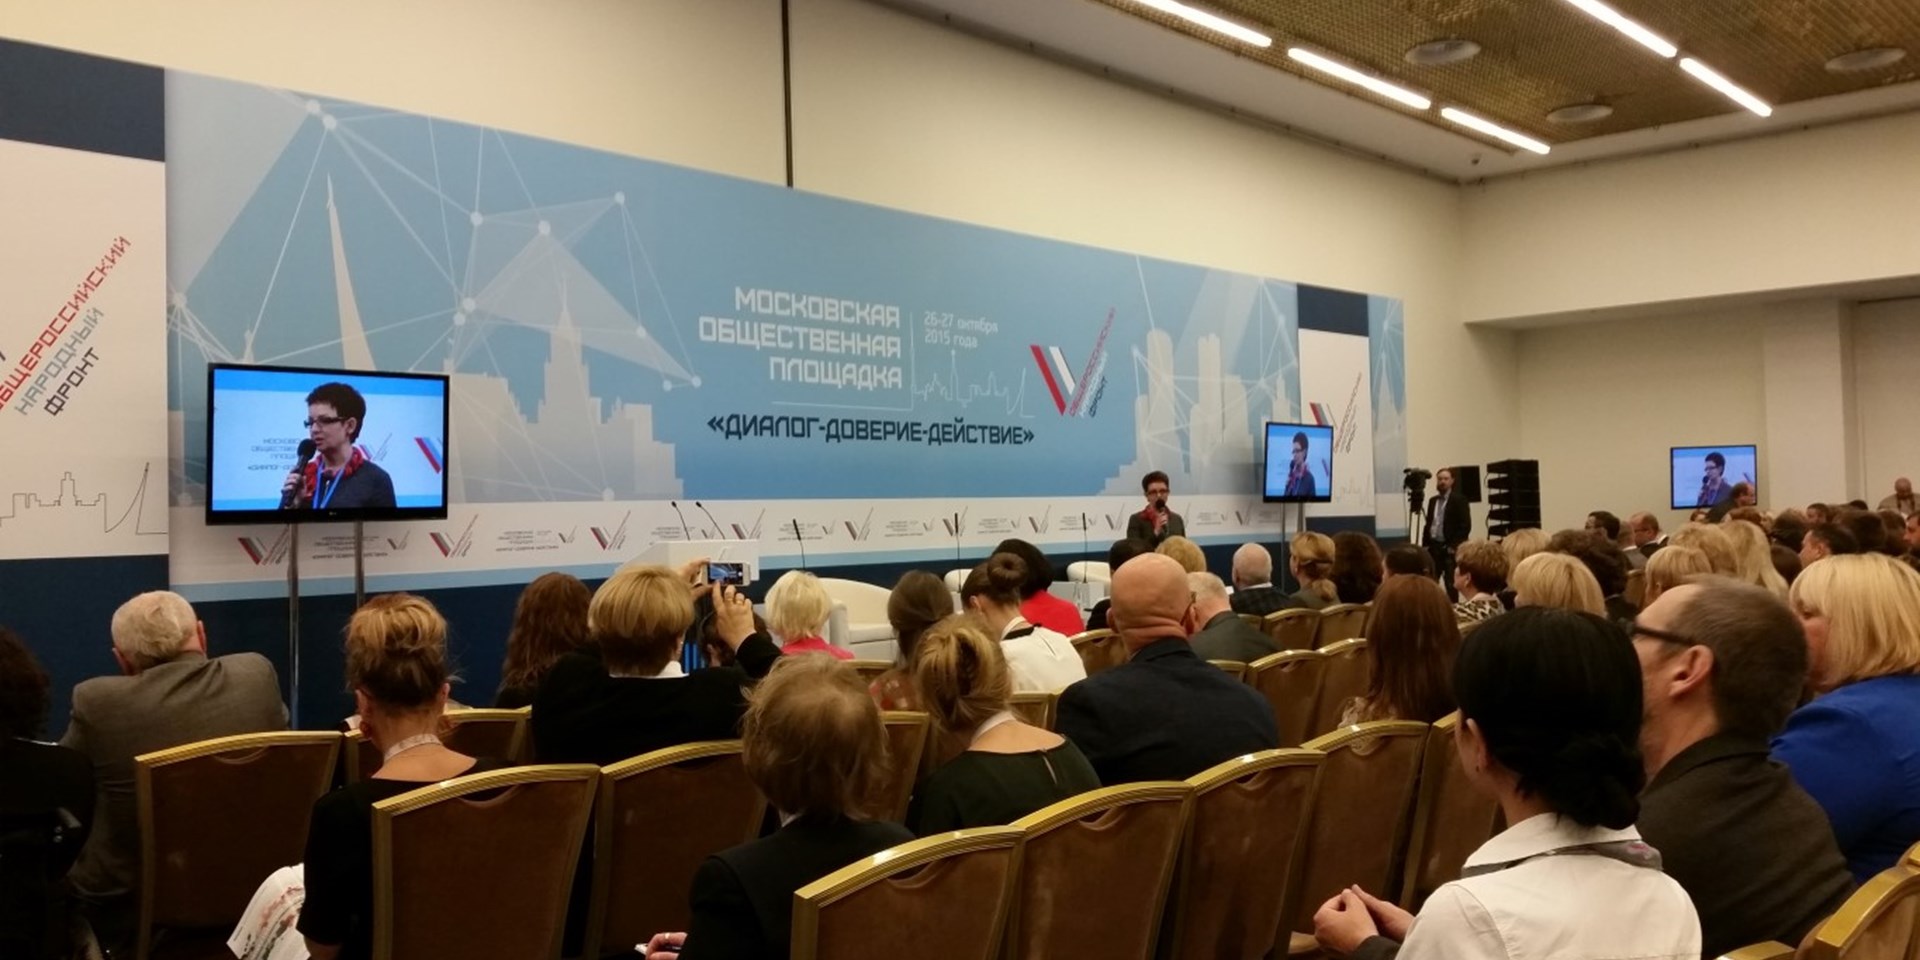 В Москве проходит конференция НКО "Диалог-Доверие-Действие"